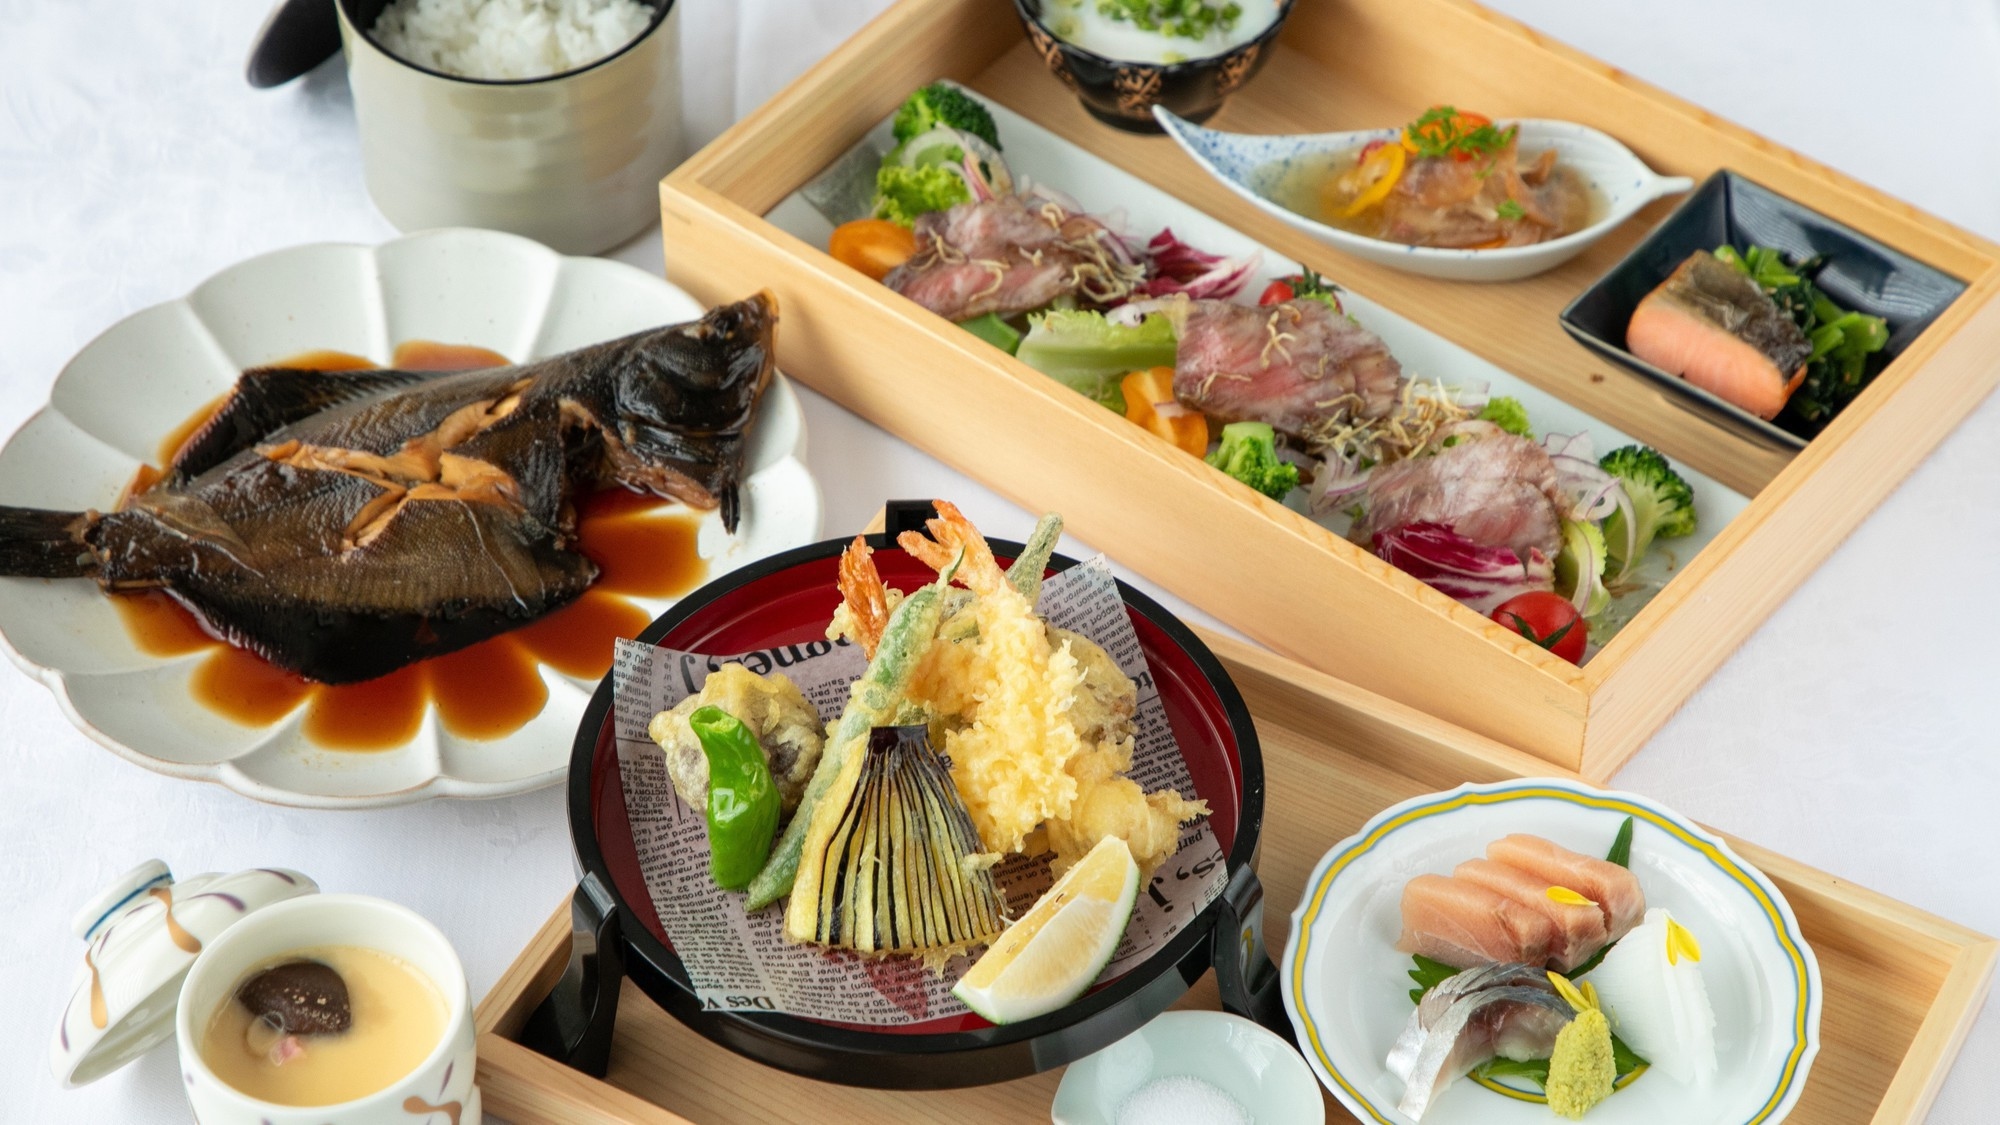 【２食付き】美味しい長崎の季節を味わうお弁当「ごちそう御膳」と朝食「長崎御膳」付き